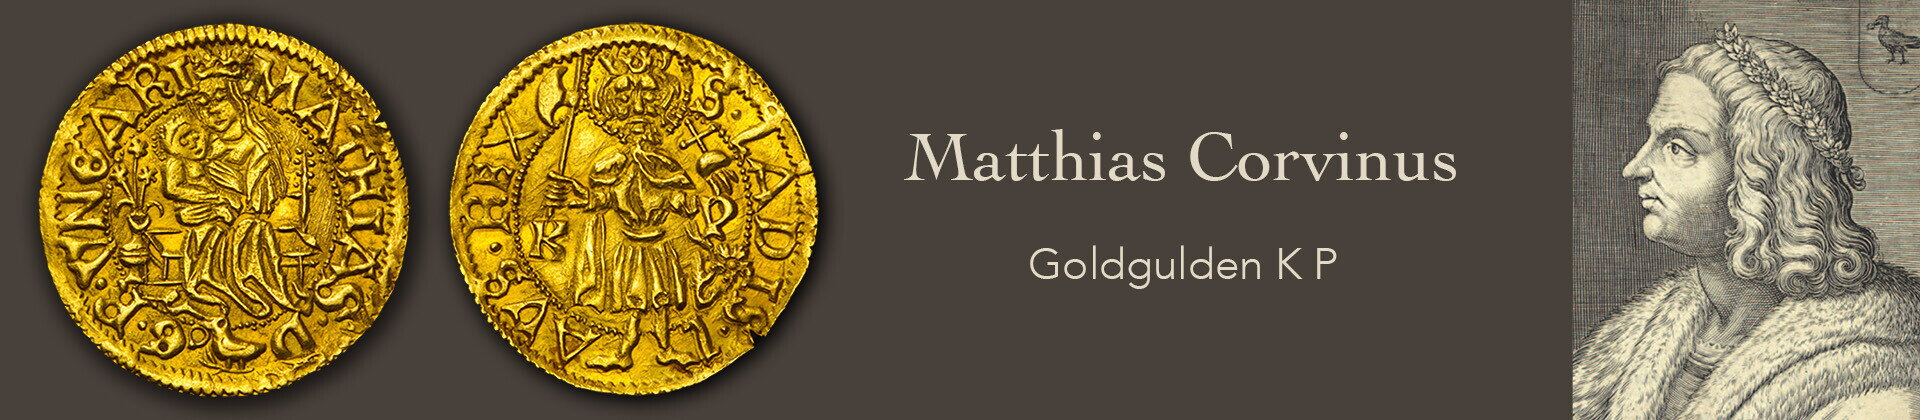   Matthias Corvinus - Goldgulden K P